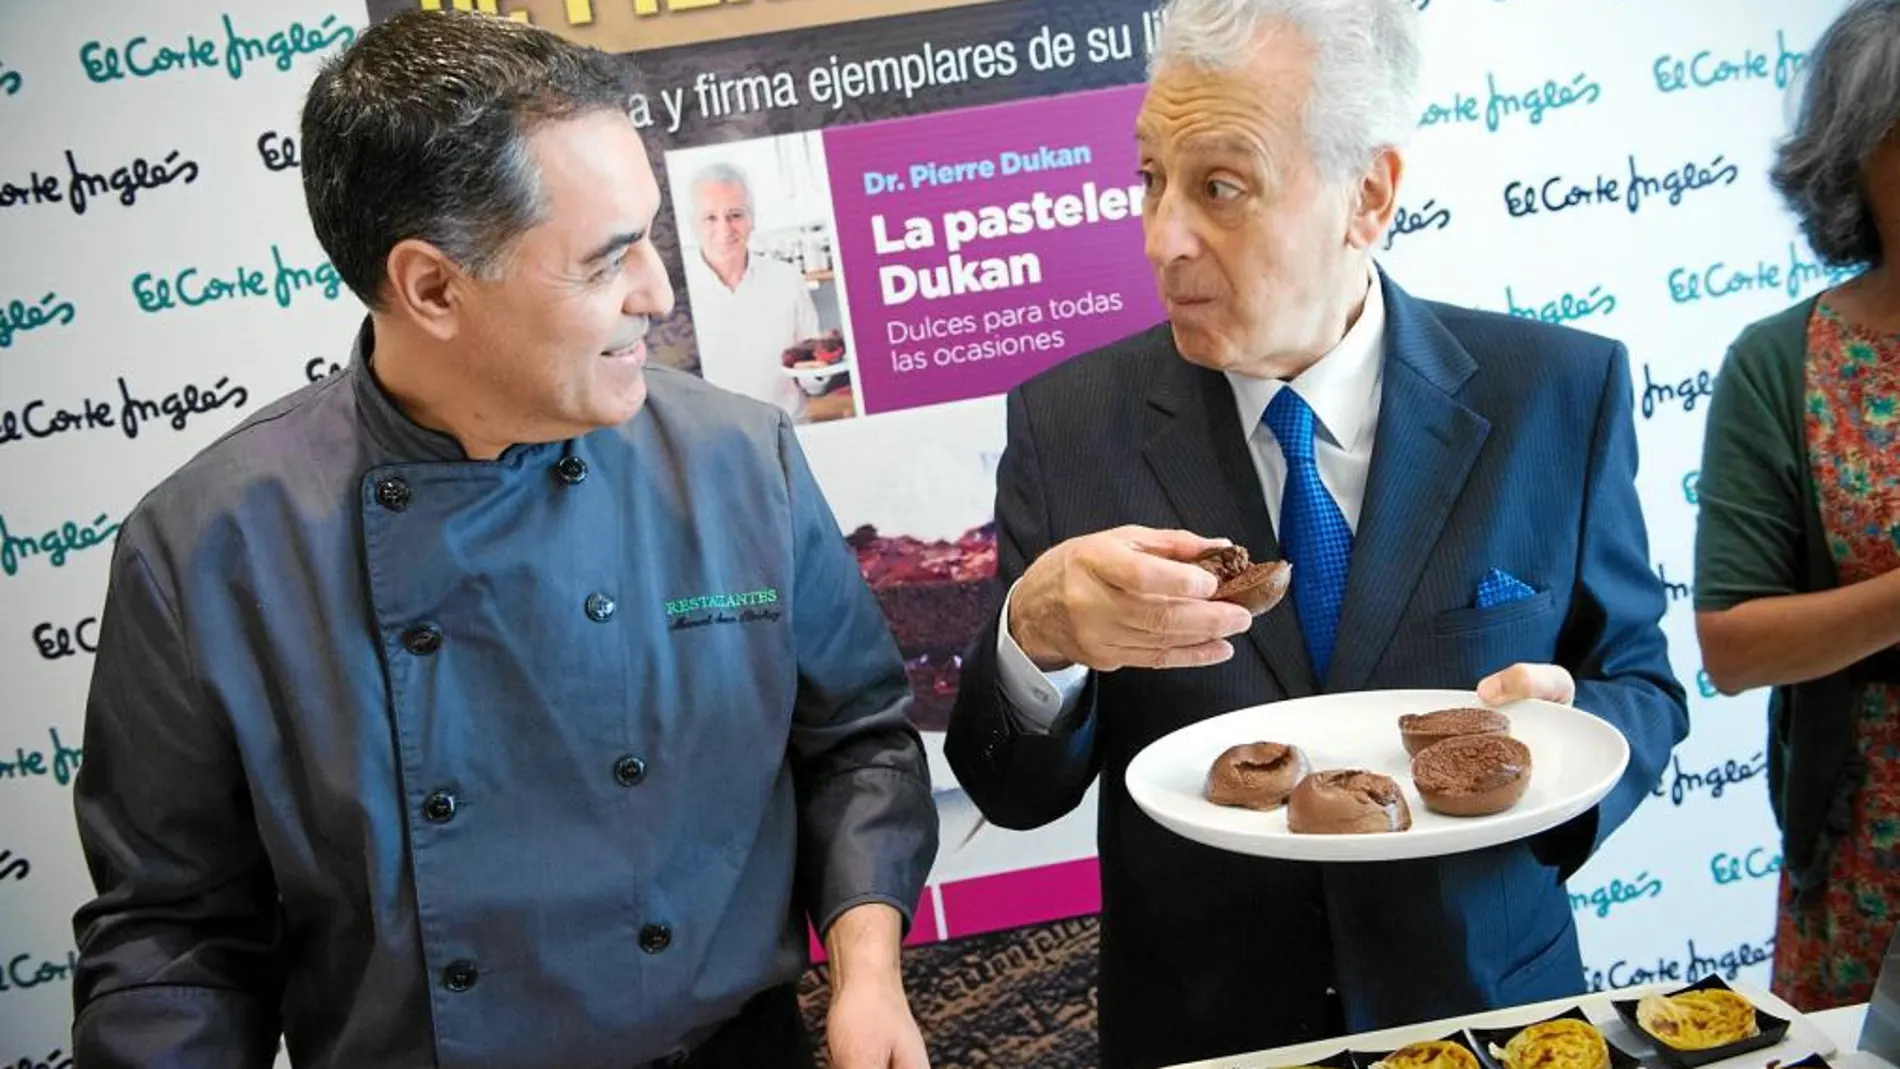 Manu Moreno, el chef de El Corte Inglés de la Avenida Francia, ayer junto al popular nutricionista francés en plena degustación